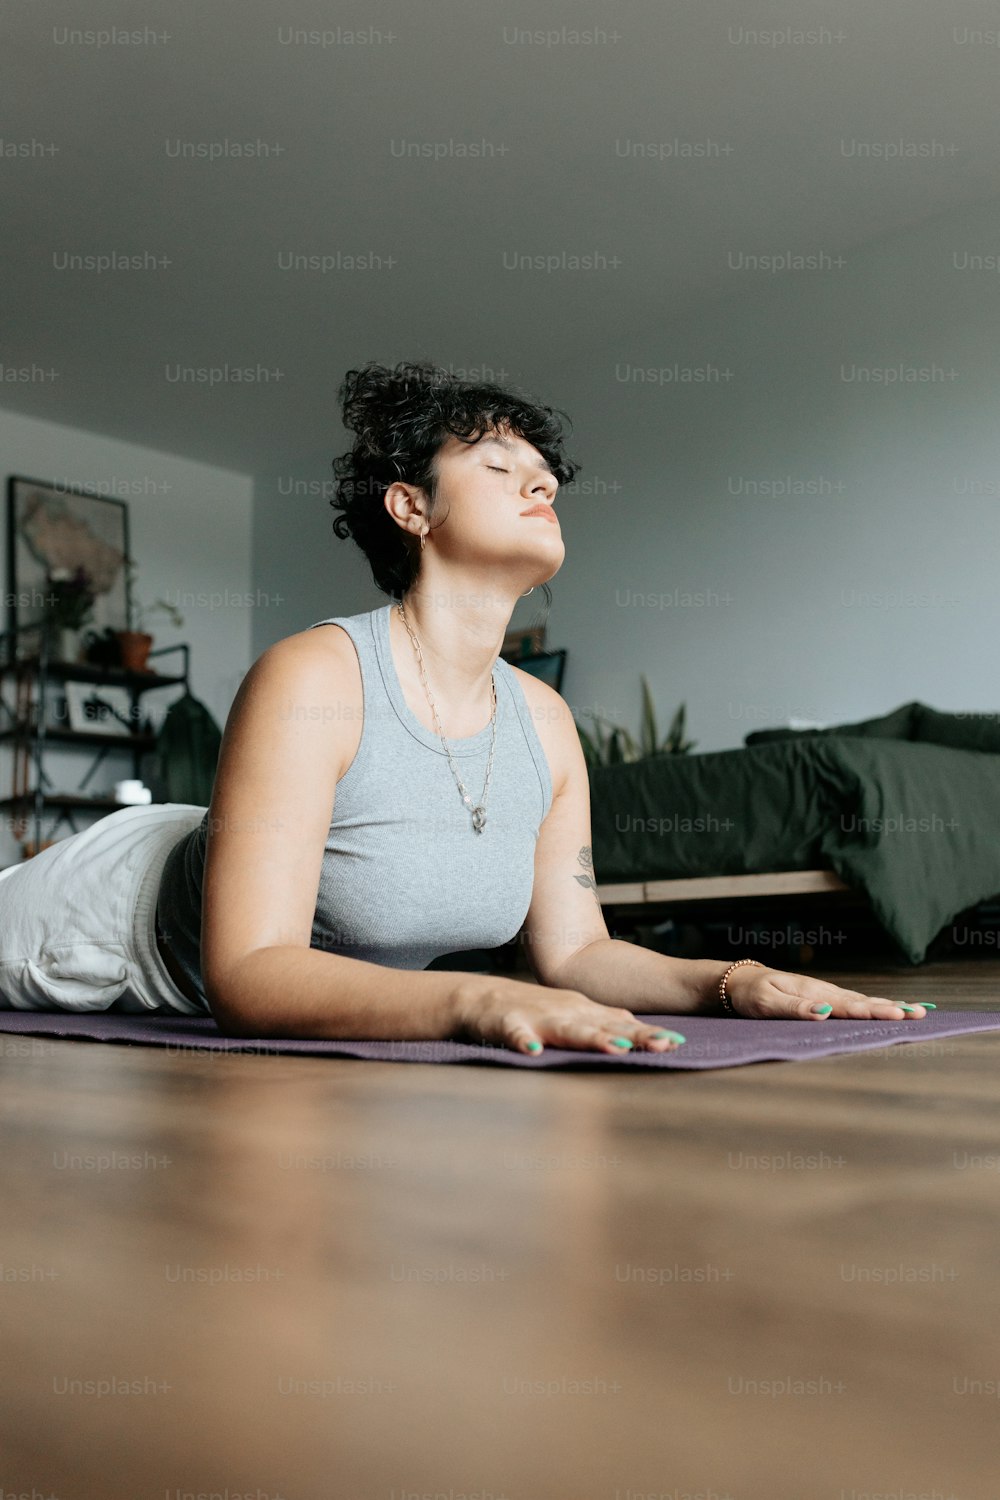 Eine Frau, die auf einer Yogamatte in der Mitte eines Raumes sitzt